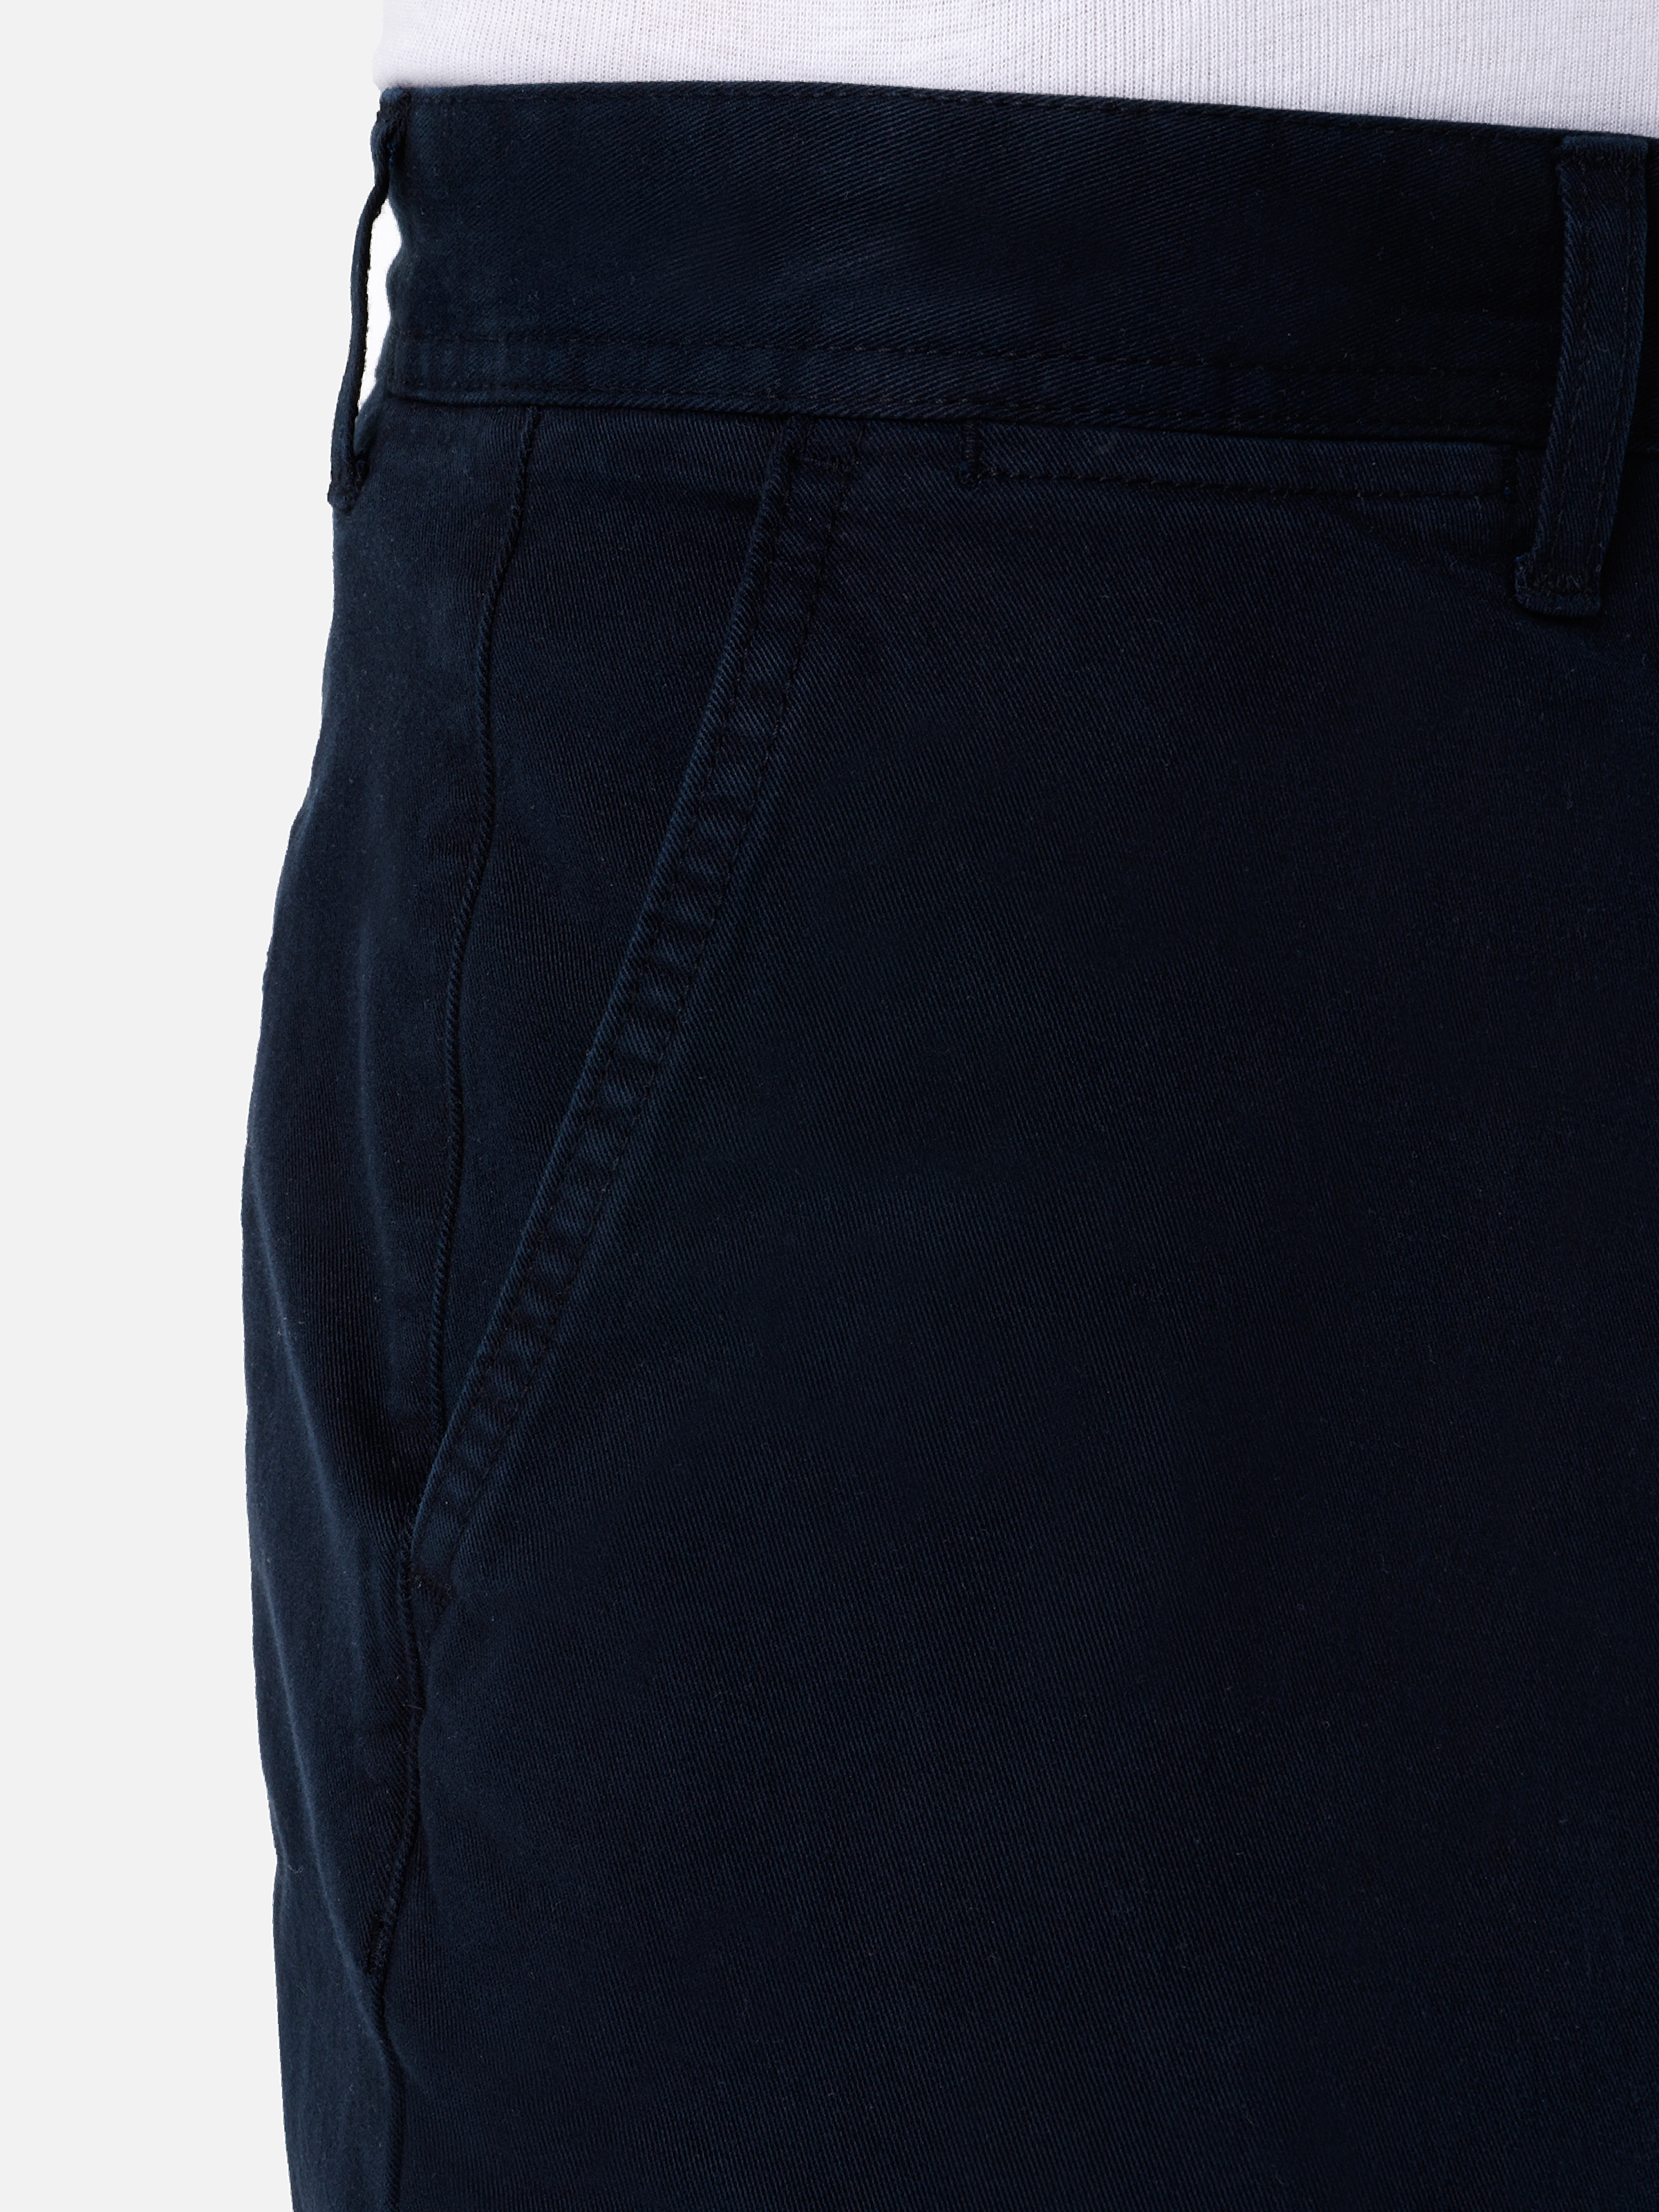 Afficher les détails de Pantalon Bleu Marine Pour Homme, Coupe Régulière, Taille Moyenne, Jambe Droite